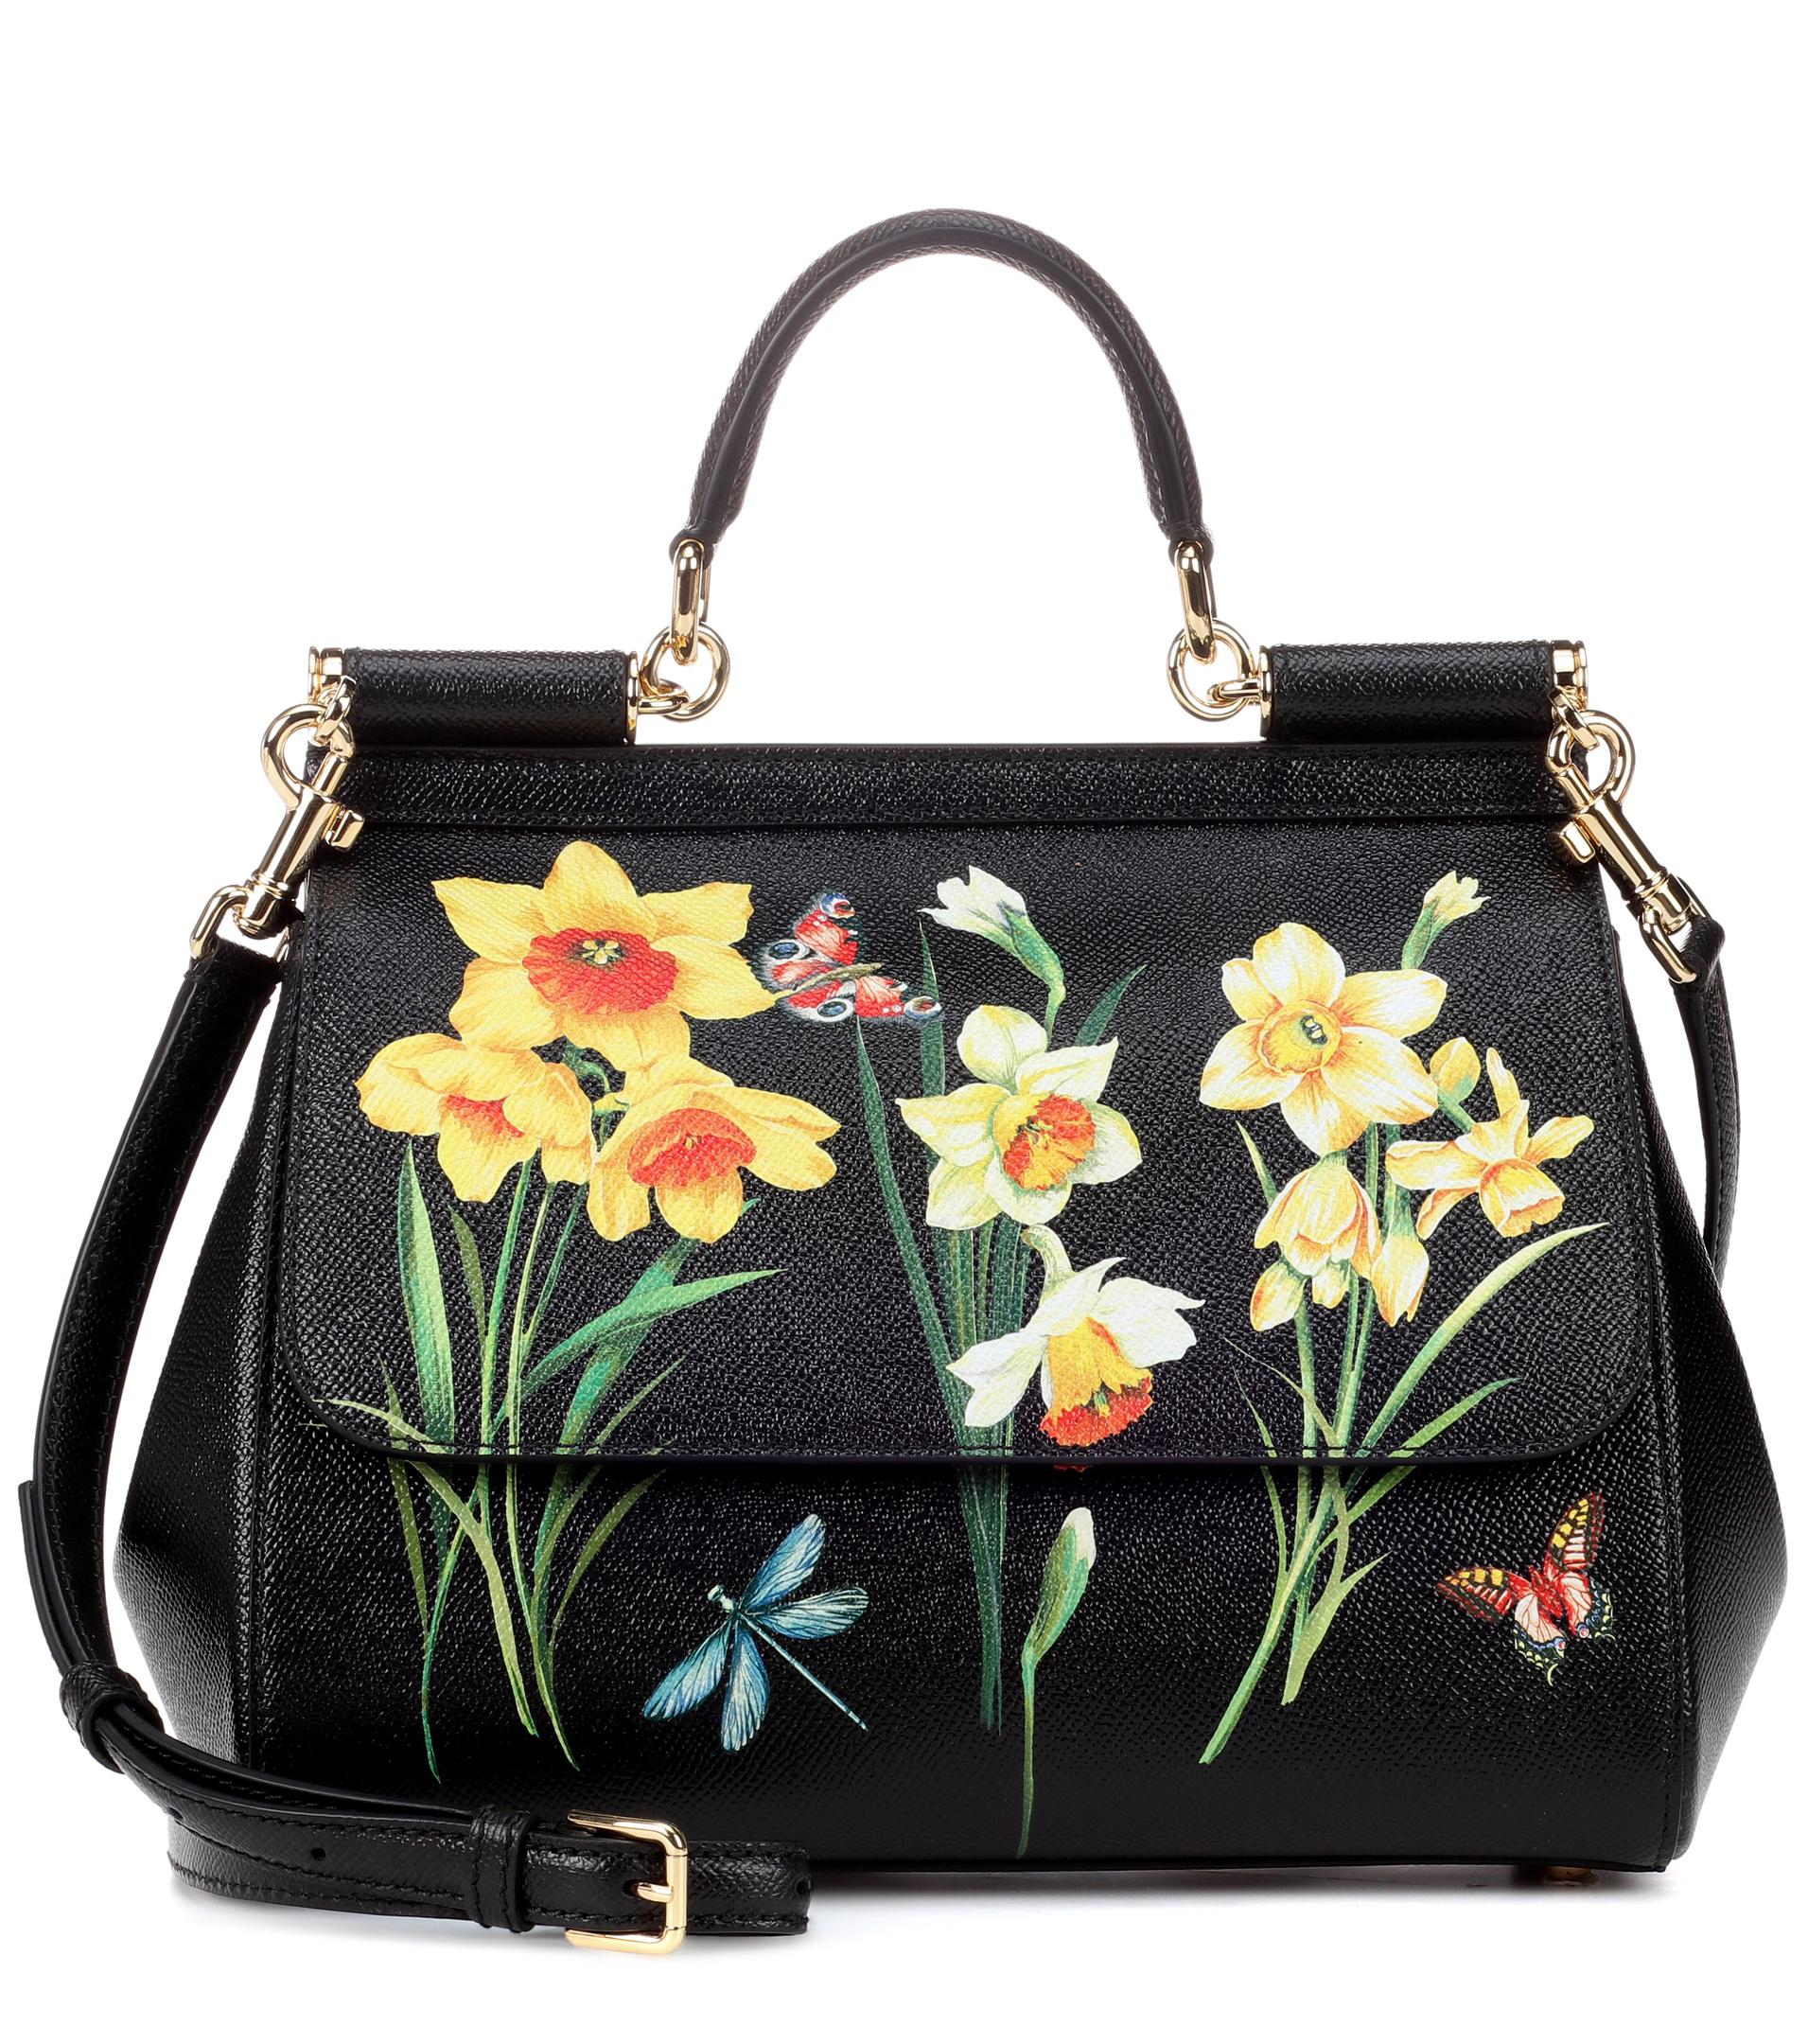 Dolce & Gabbana Sicily Medium Leather Shoulder Bag in Black - Lyst